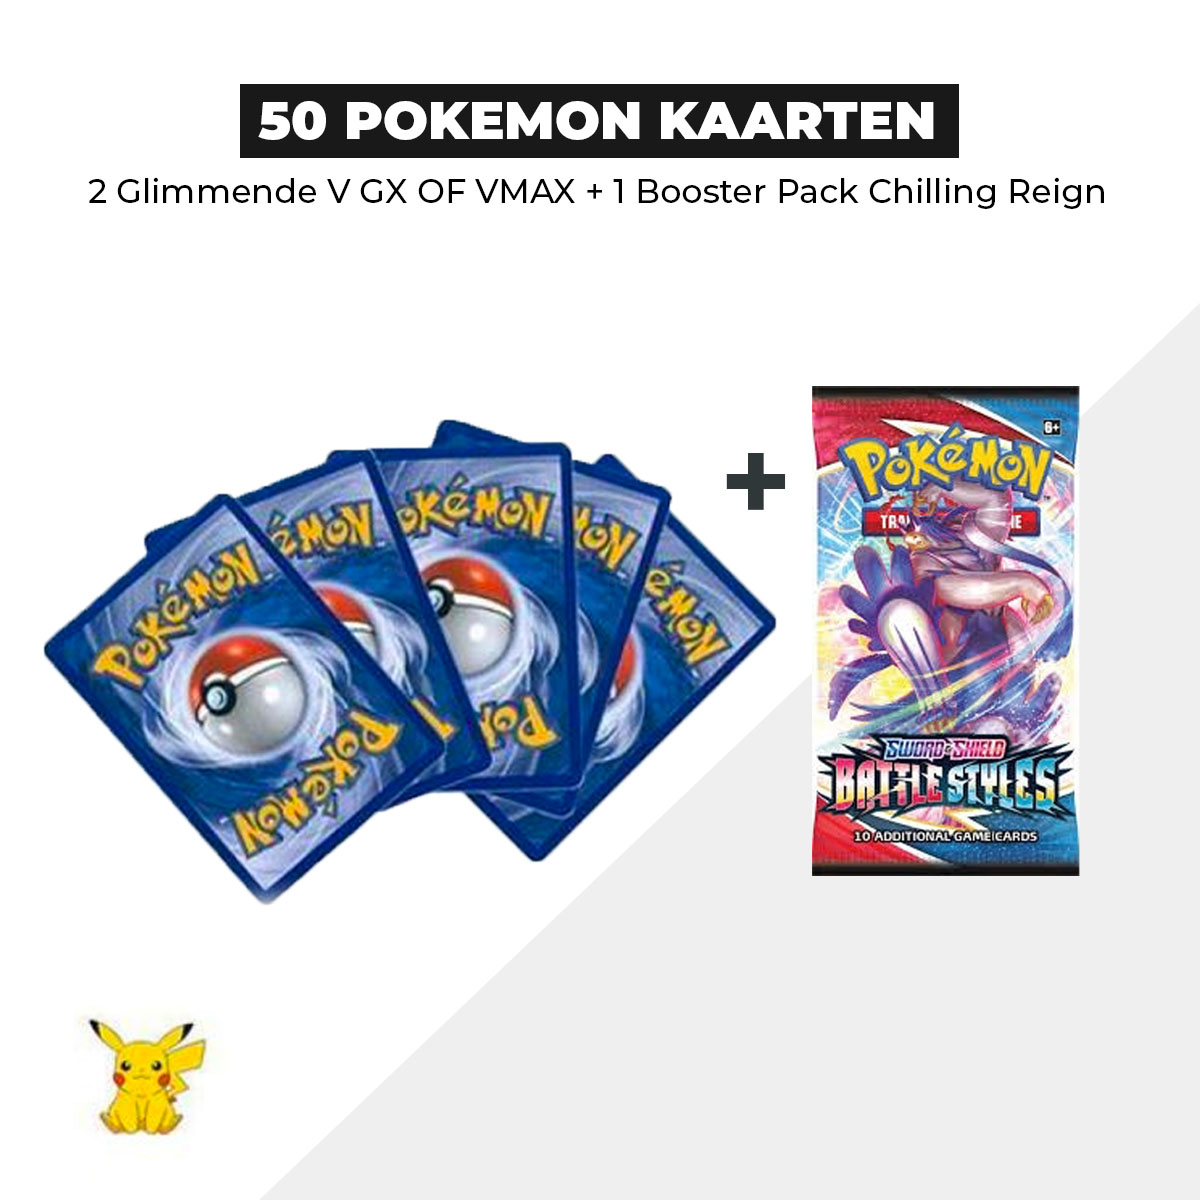 50 Pokémon Kaarten Bundel + 1 Battle Styles Booster pack